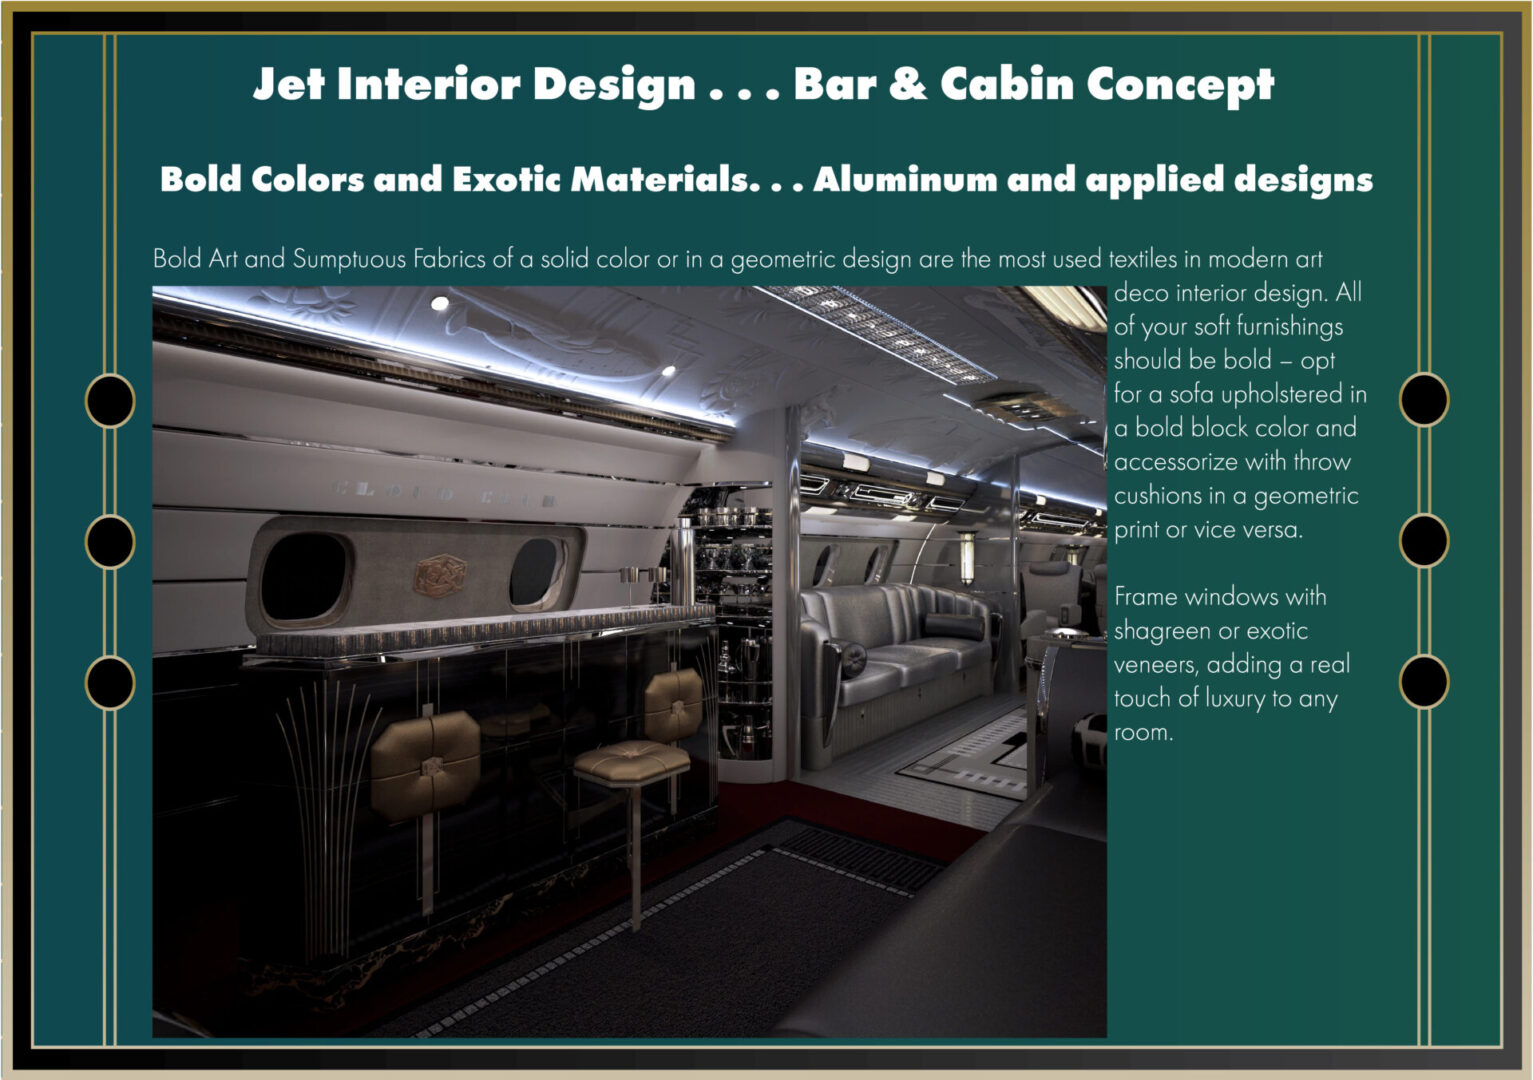 Jet Interior Design having Aluminum and applied designs